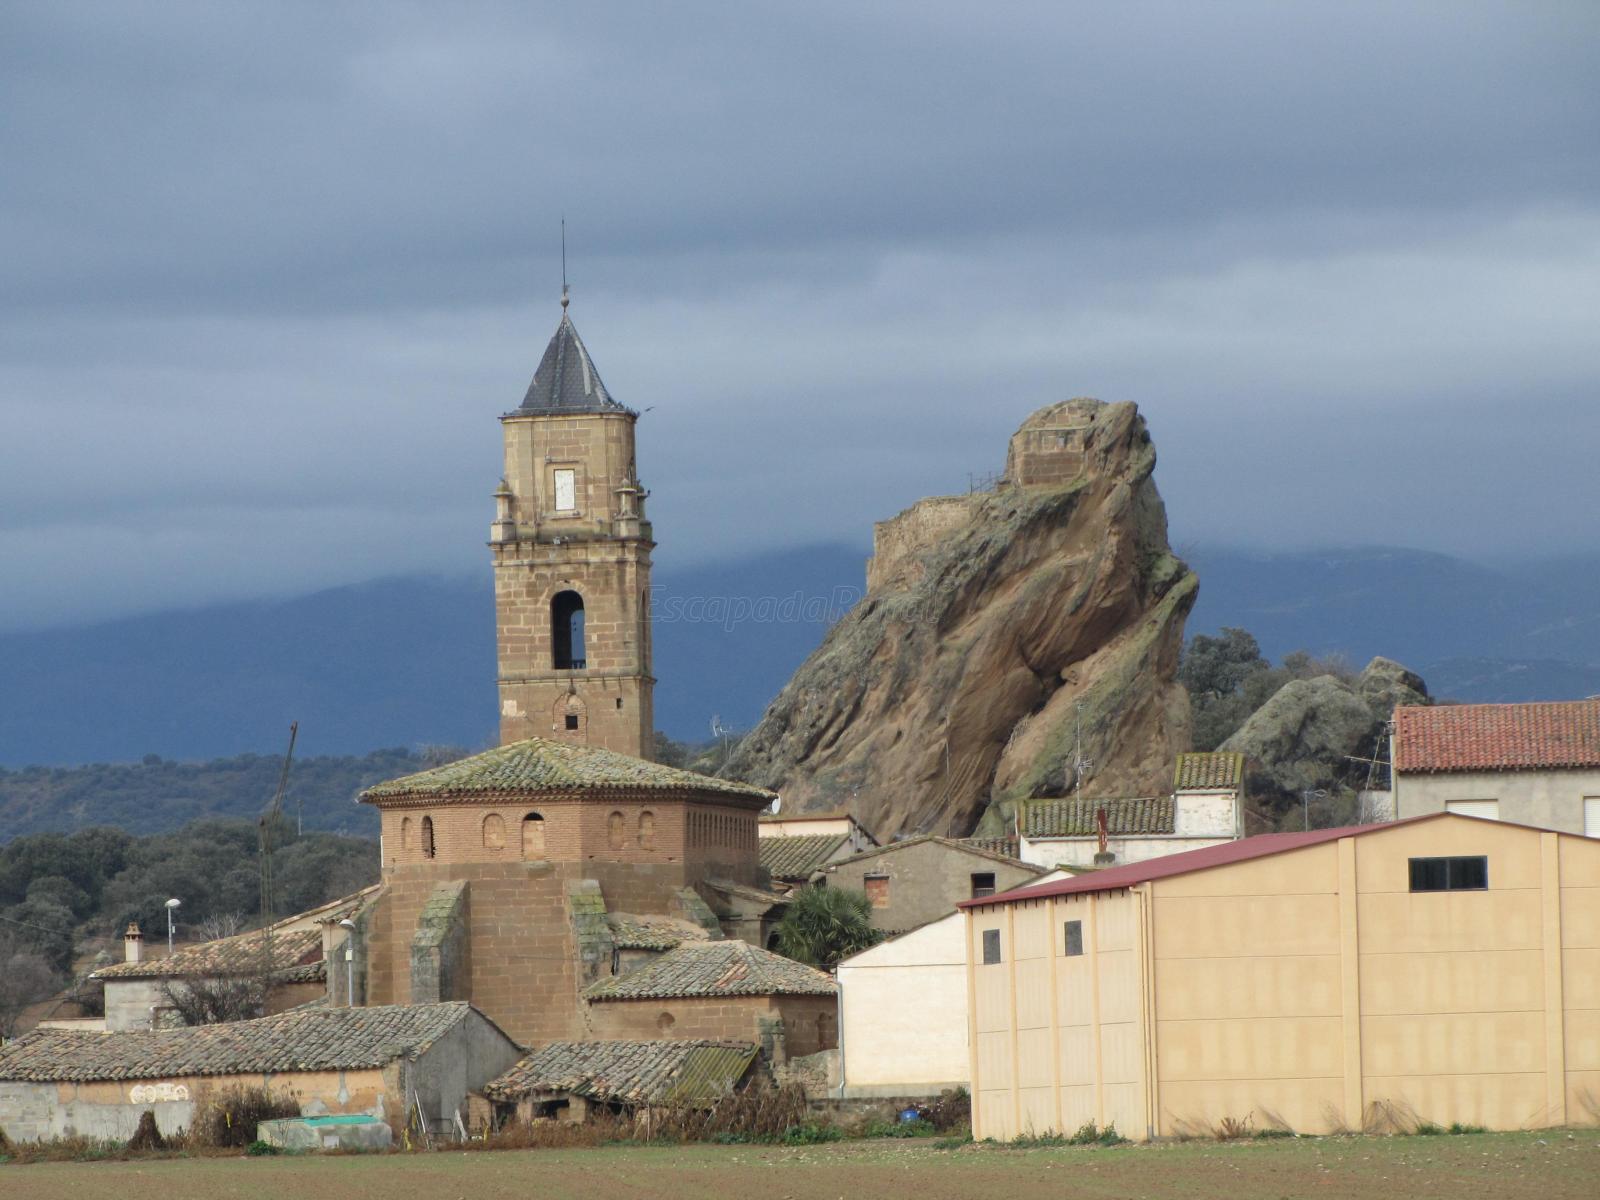 Vista de la iglesia de Azara, con la Peña de Santa Margarita al fondo (fuente: https://www.escapadarural.com/que-hacer/azara).